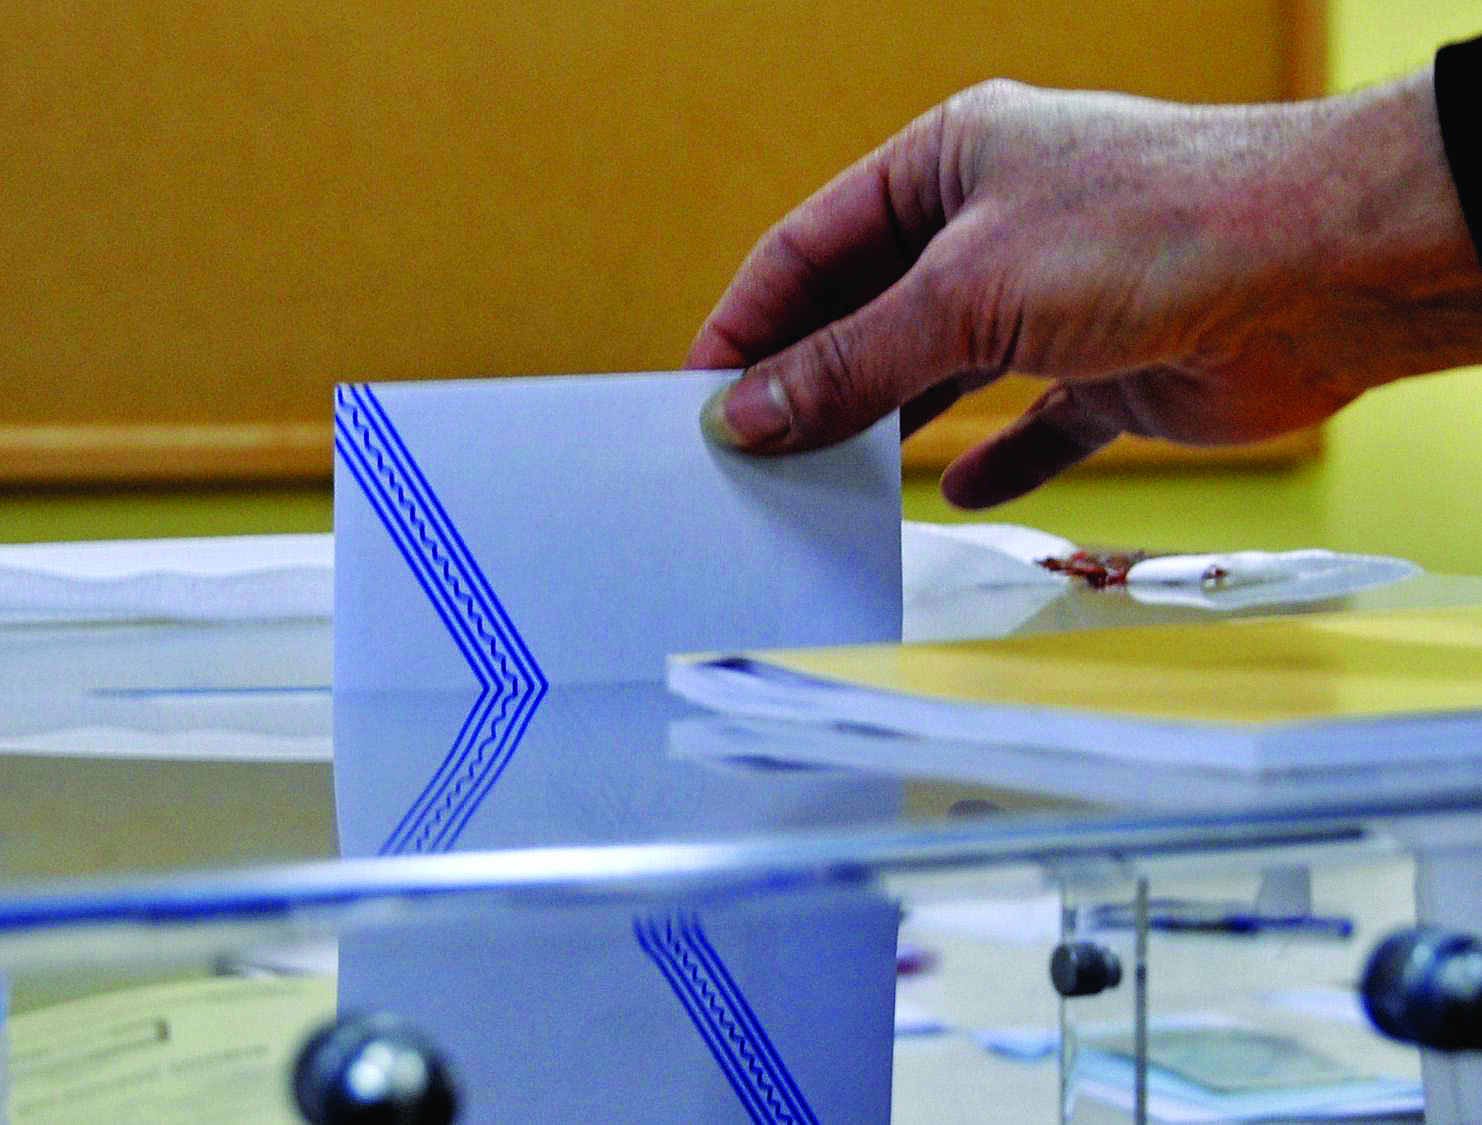 Ιταλία: Η κεντροδεξιά νικήτρια στις δημοτικές εκλογές 2022, σύμφωνα με τα exit poll